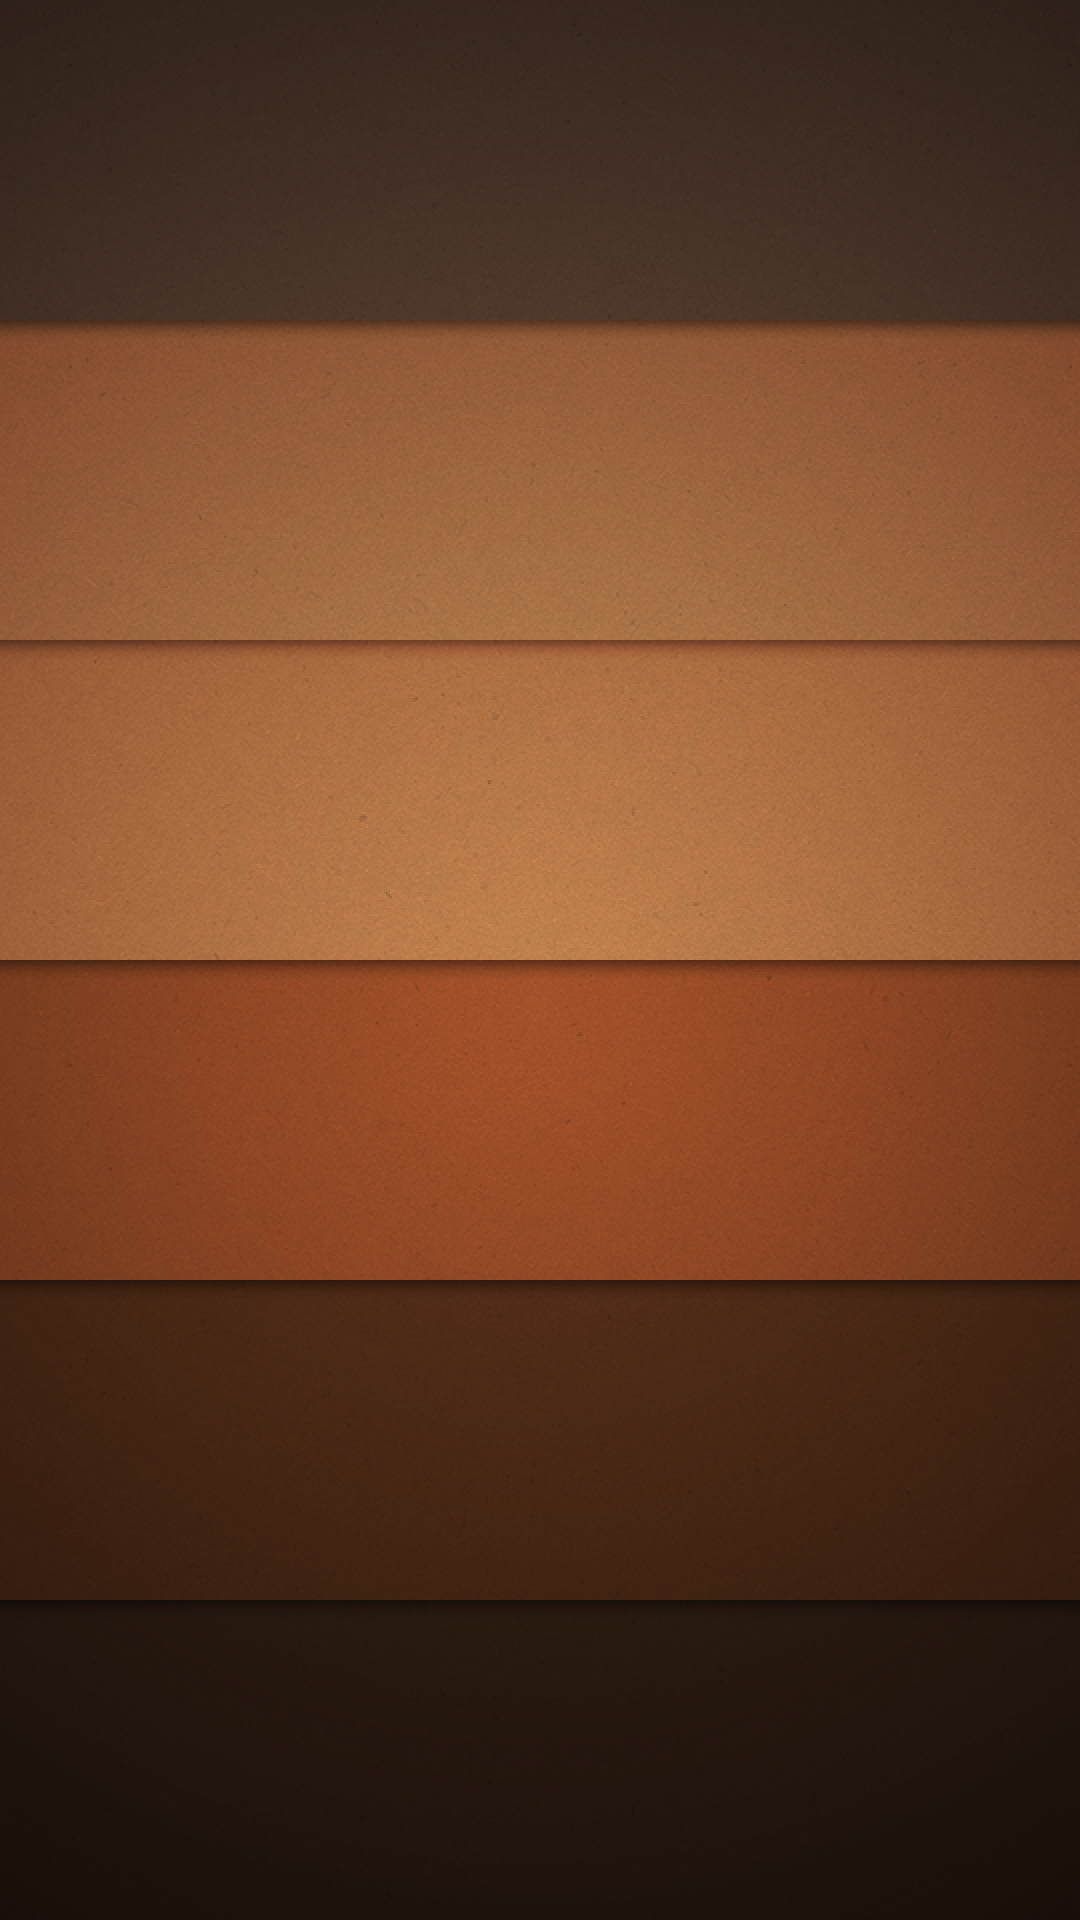 android marshmallow wallpaper 1080p,orange,braun,gelb,linie,himmel